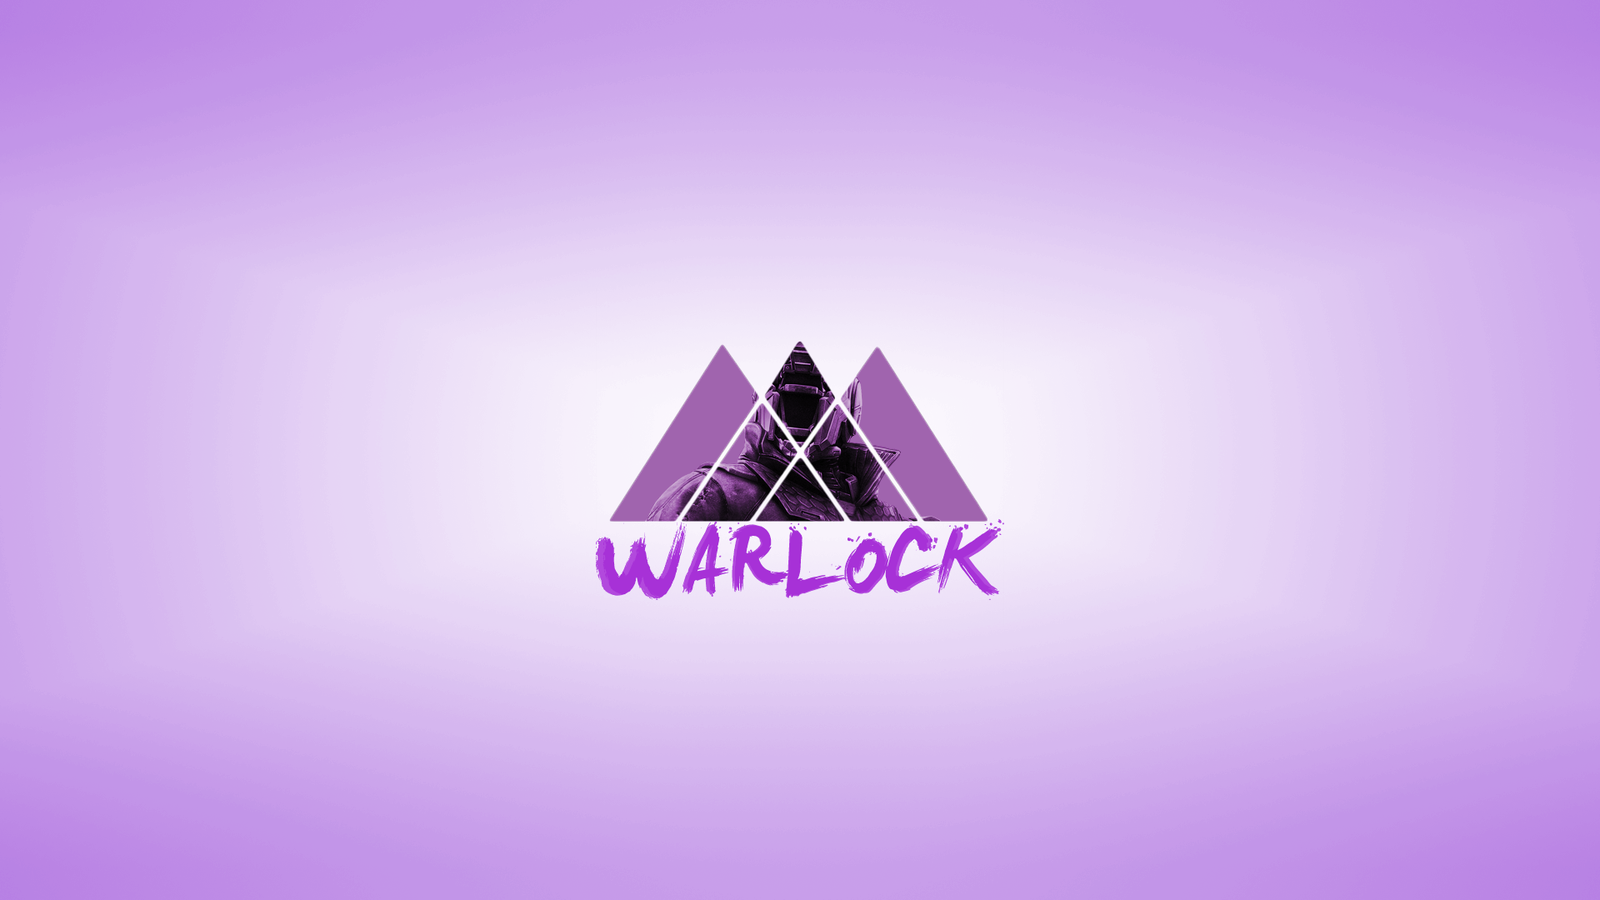 Destiny Warlock Wallpaper by LittleDesignz on